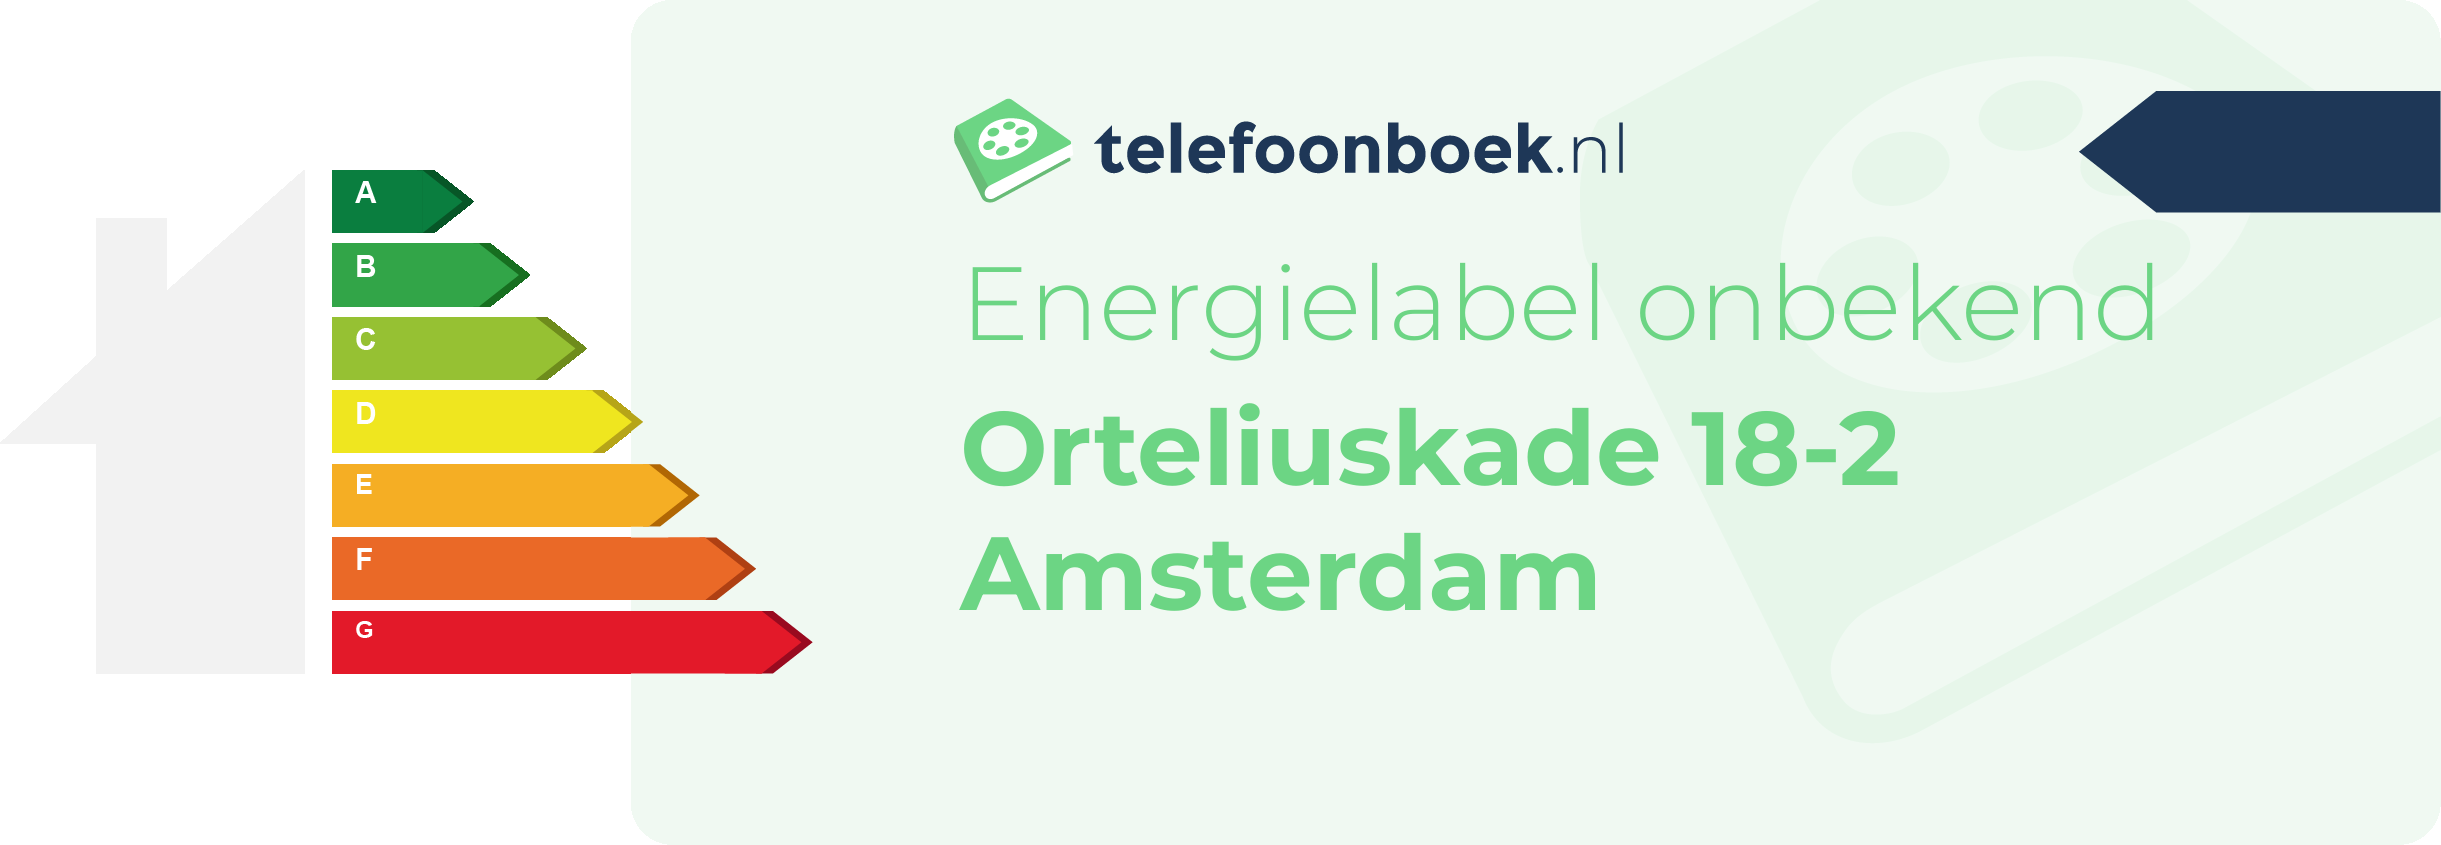 Energielabel Orteliuskade 18-2 Amsterdam